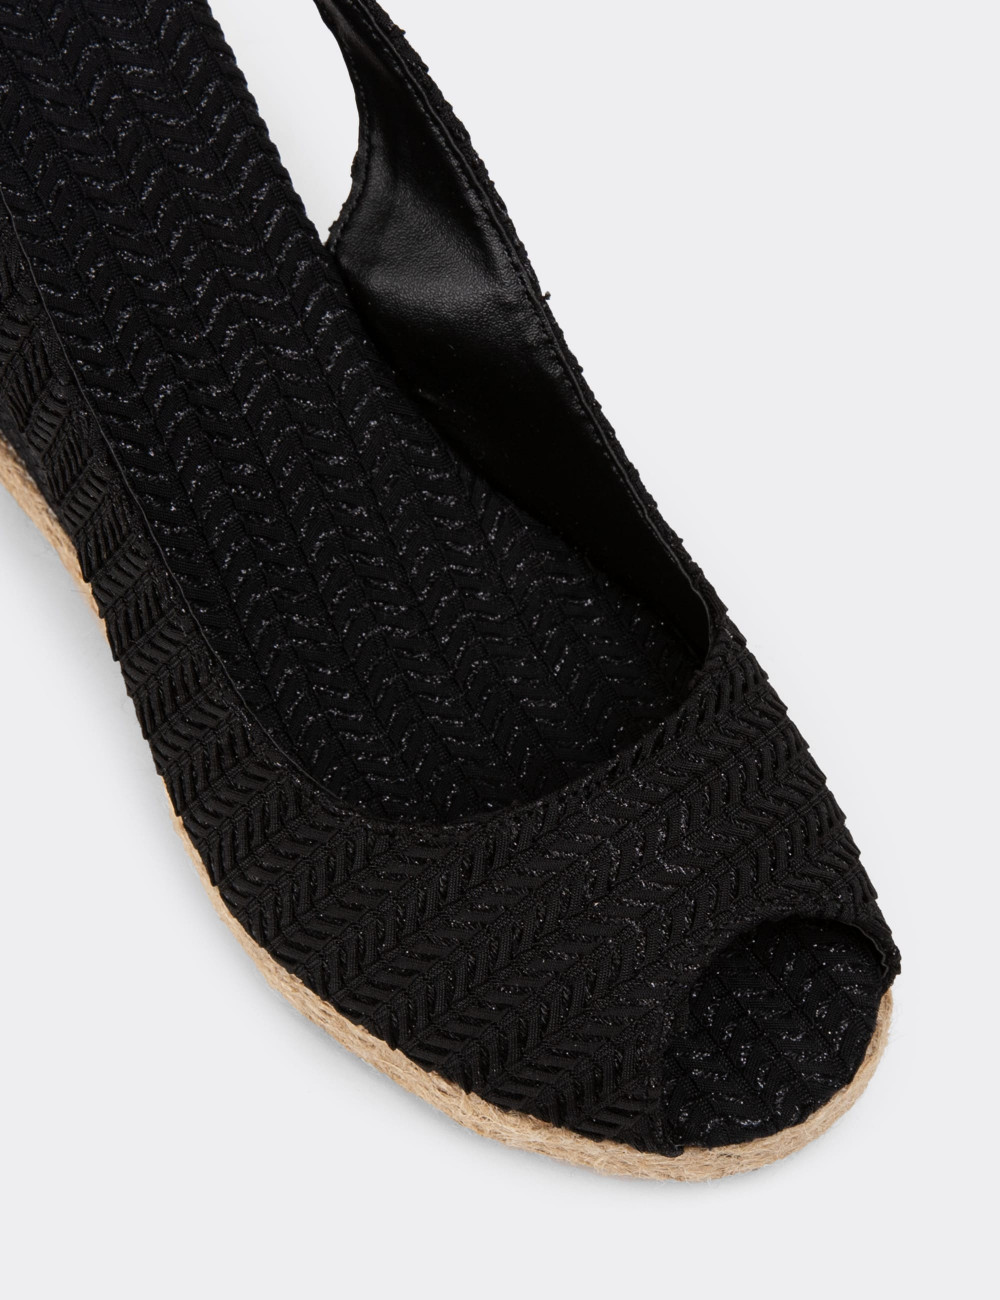 Siyah Dolgu Topuk Hasır Desen Kadın Sandalet - K1162ZSYHC01